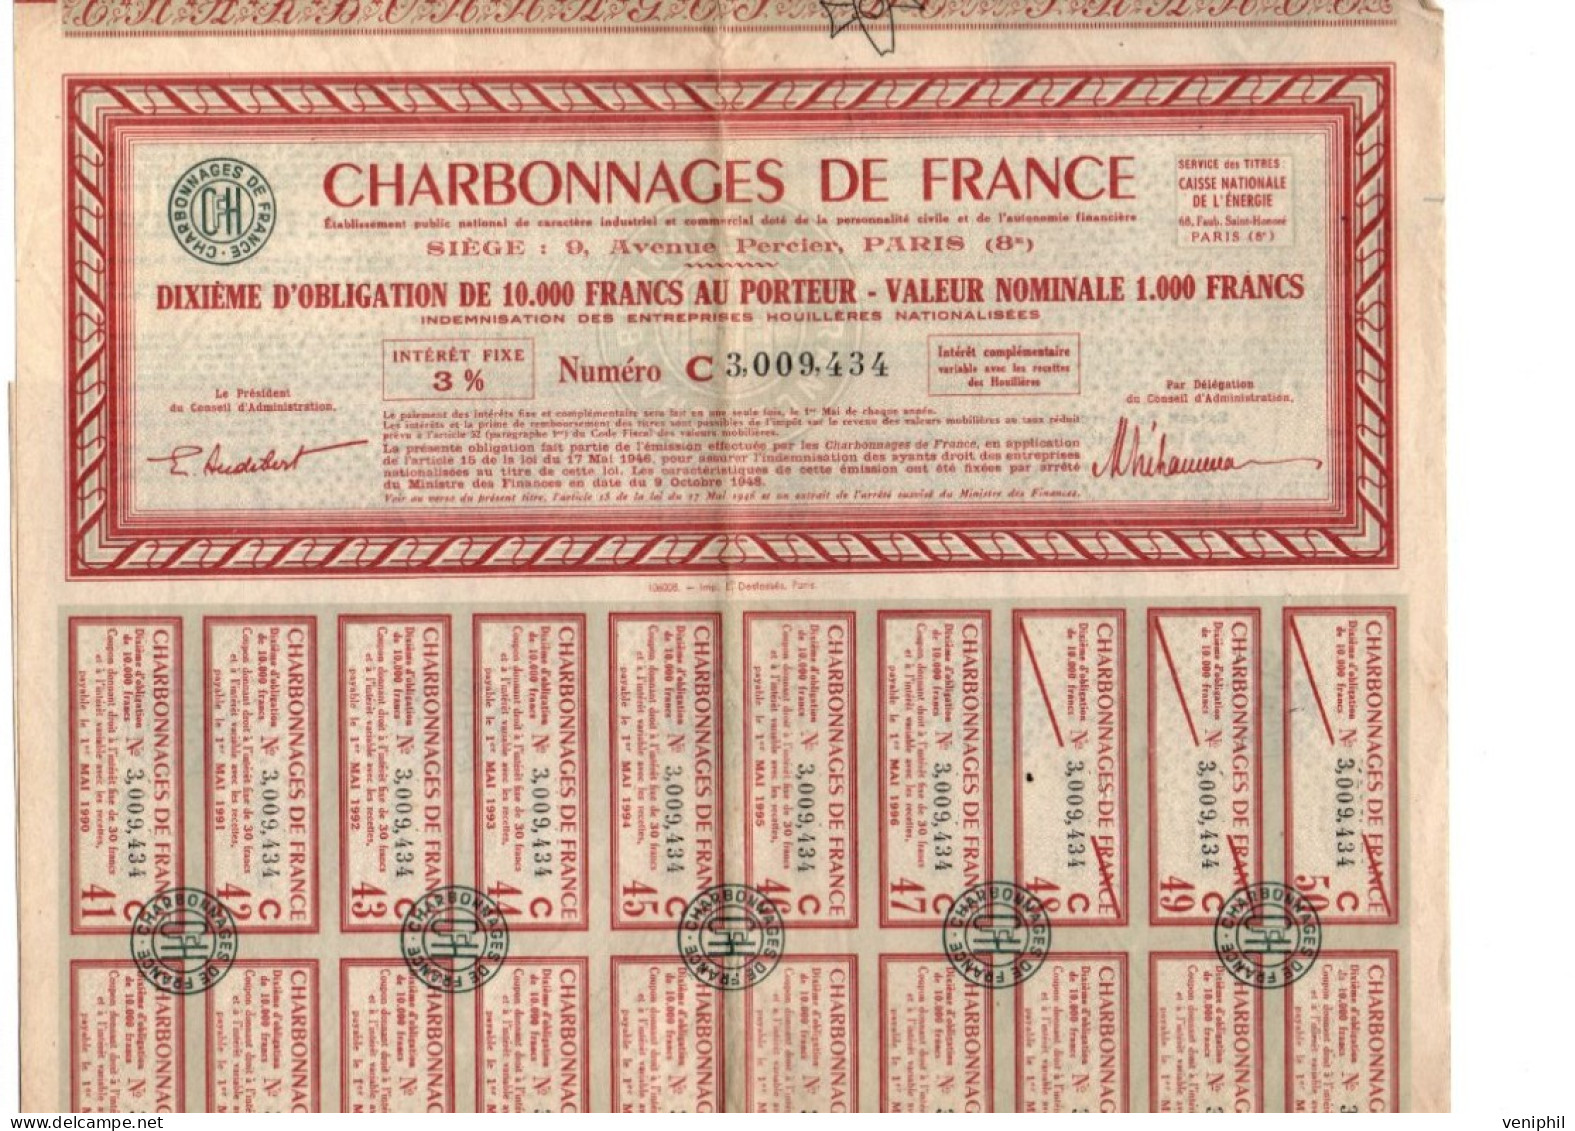 CHARBONNAGE DE FRANCE - DIXIEME D'OBLIGATION DE 10.000FRS - VALEUR NOMINALE DE 1000 FRS - ANNEE 1948 - Mines